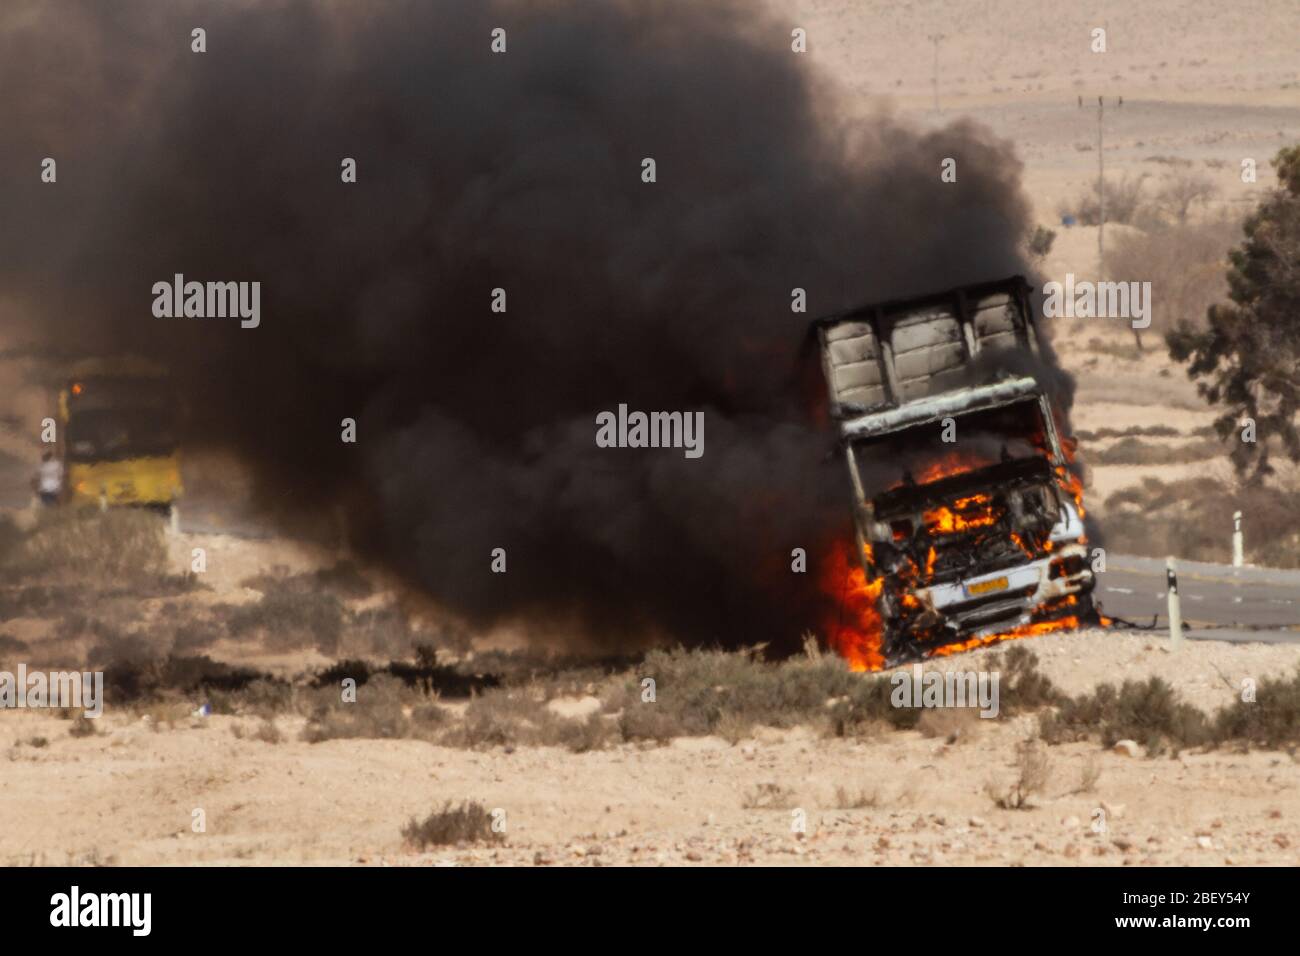 Les flammes et la fumée engloutir un camion en feu. Le camion s'est enflammé par une bombe à kite envoyée de Gaza. Photographié à la frontière israélienne de Gaza le 20 avril Banque D'Images